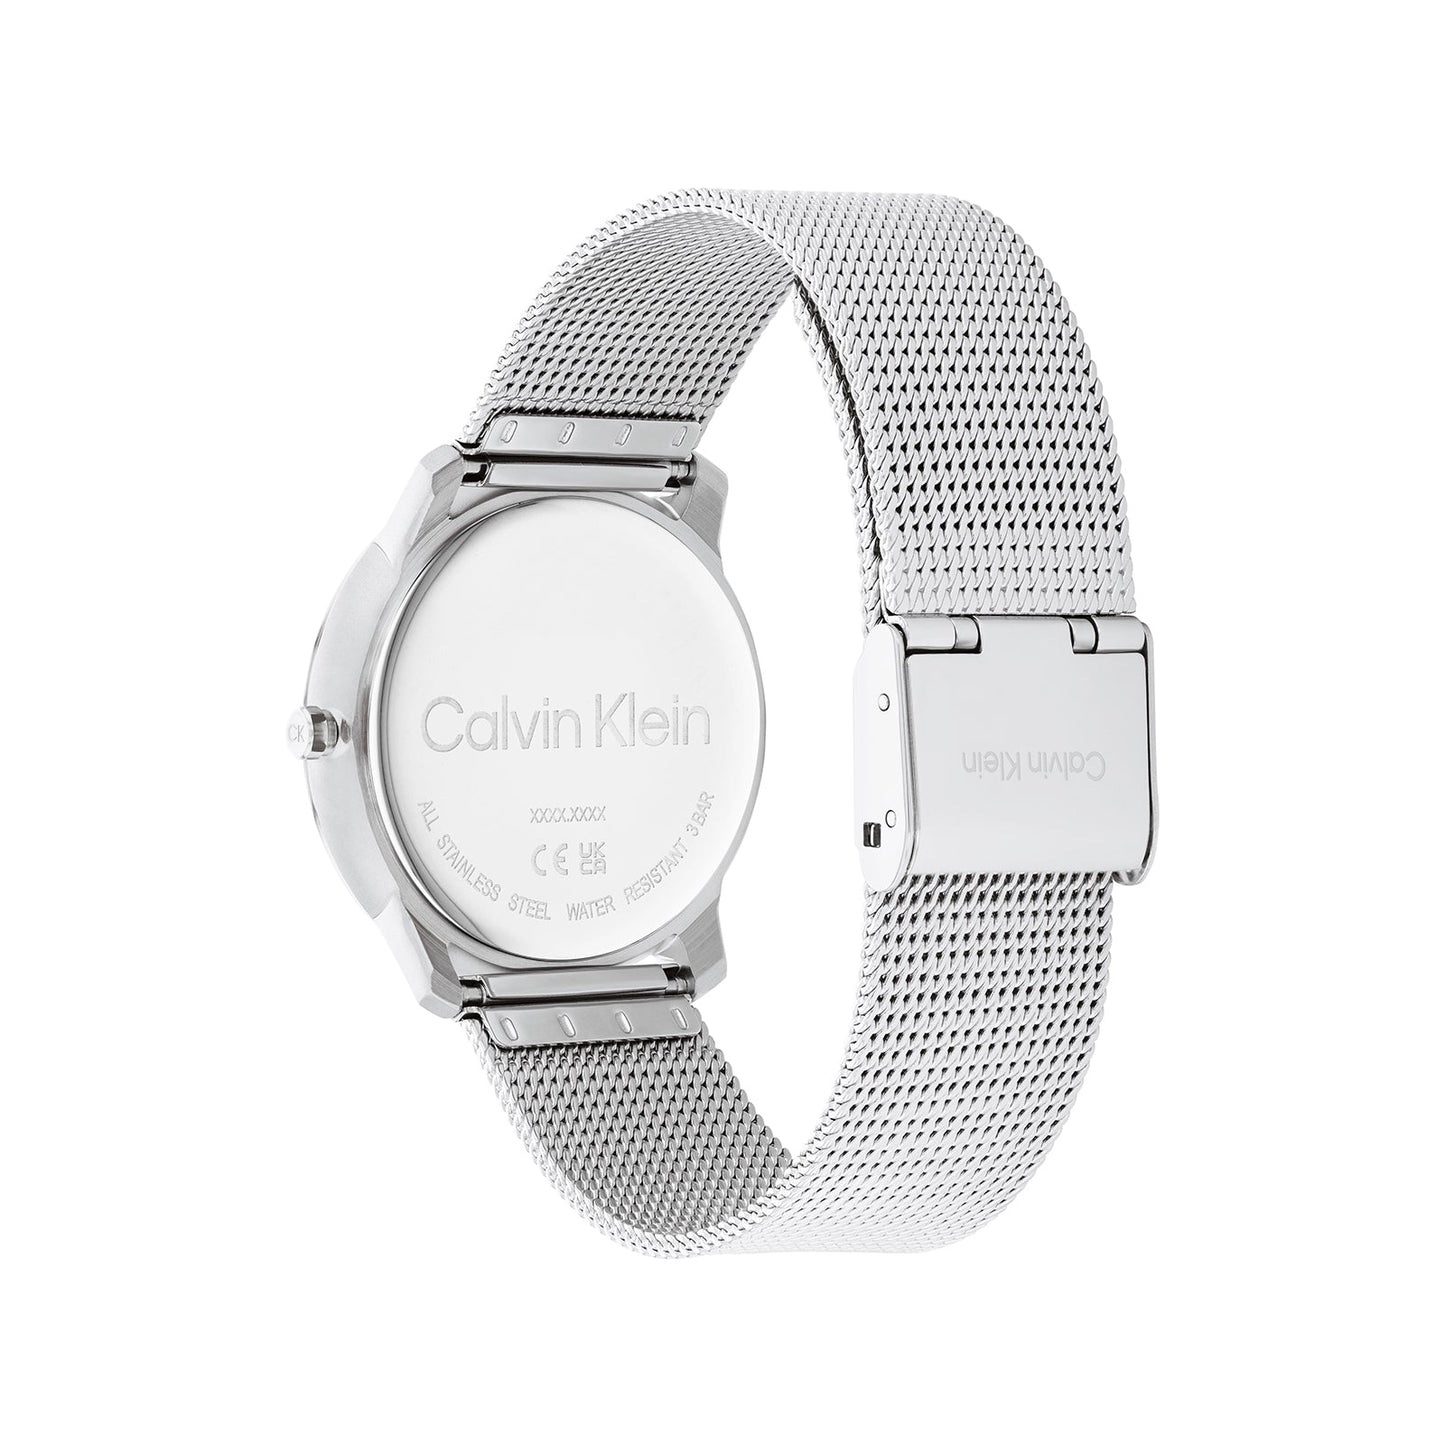 Calvin Klein 25200033 Unisex Steel Mesh Watch